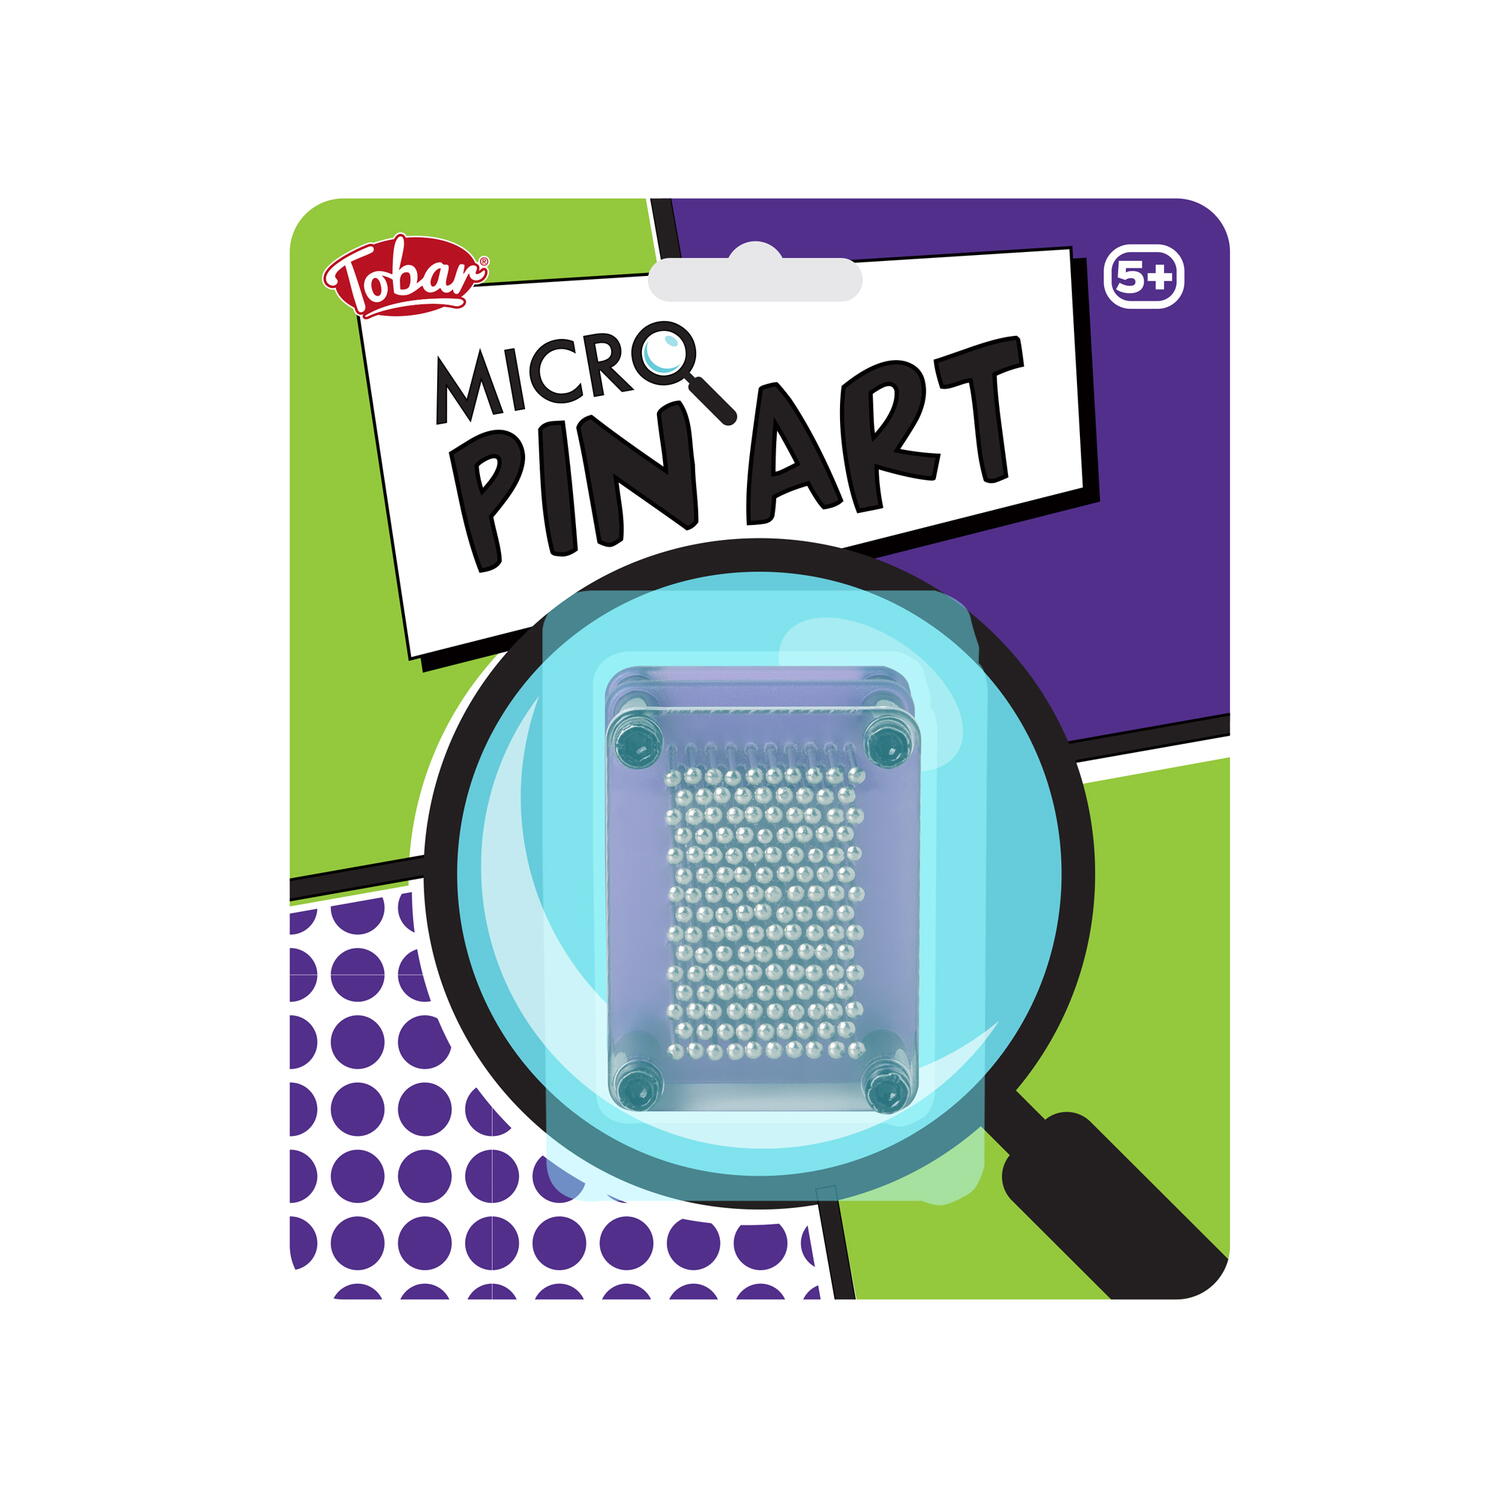 Micro pin art